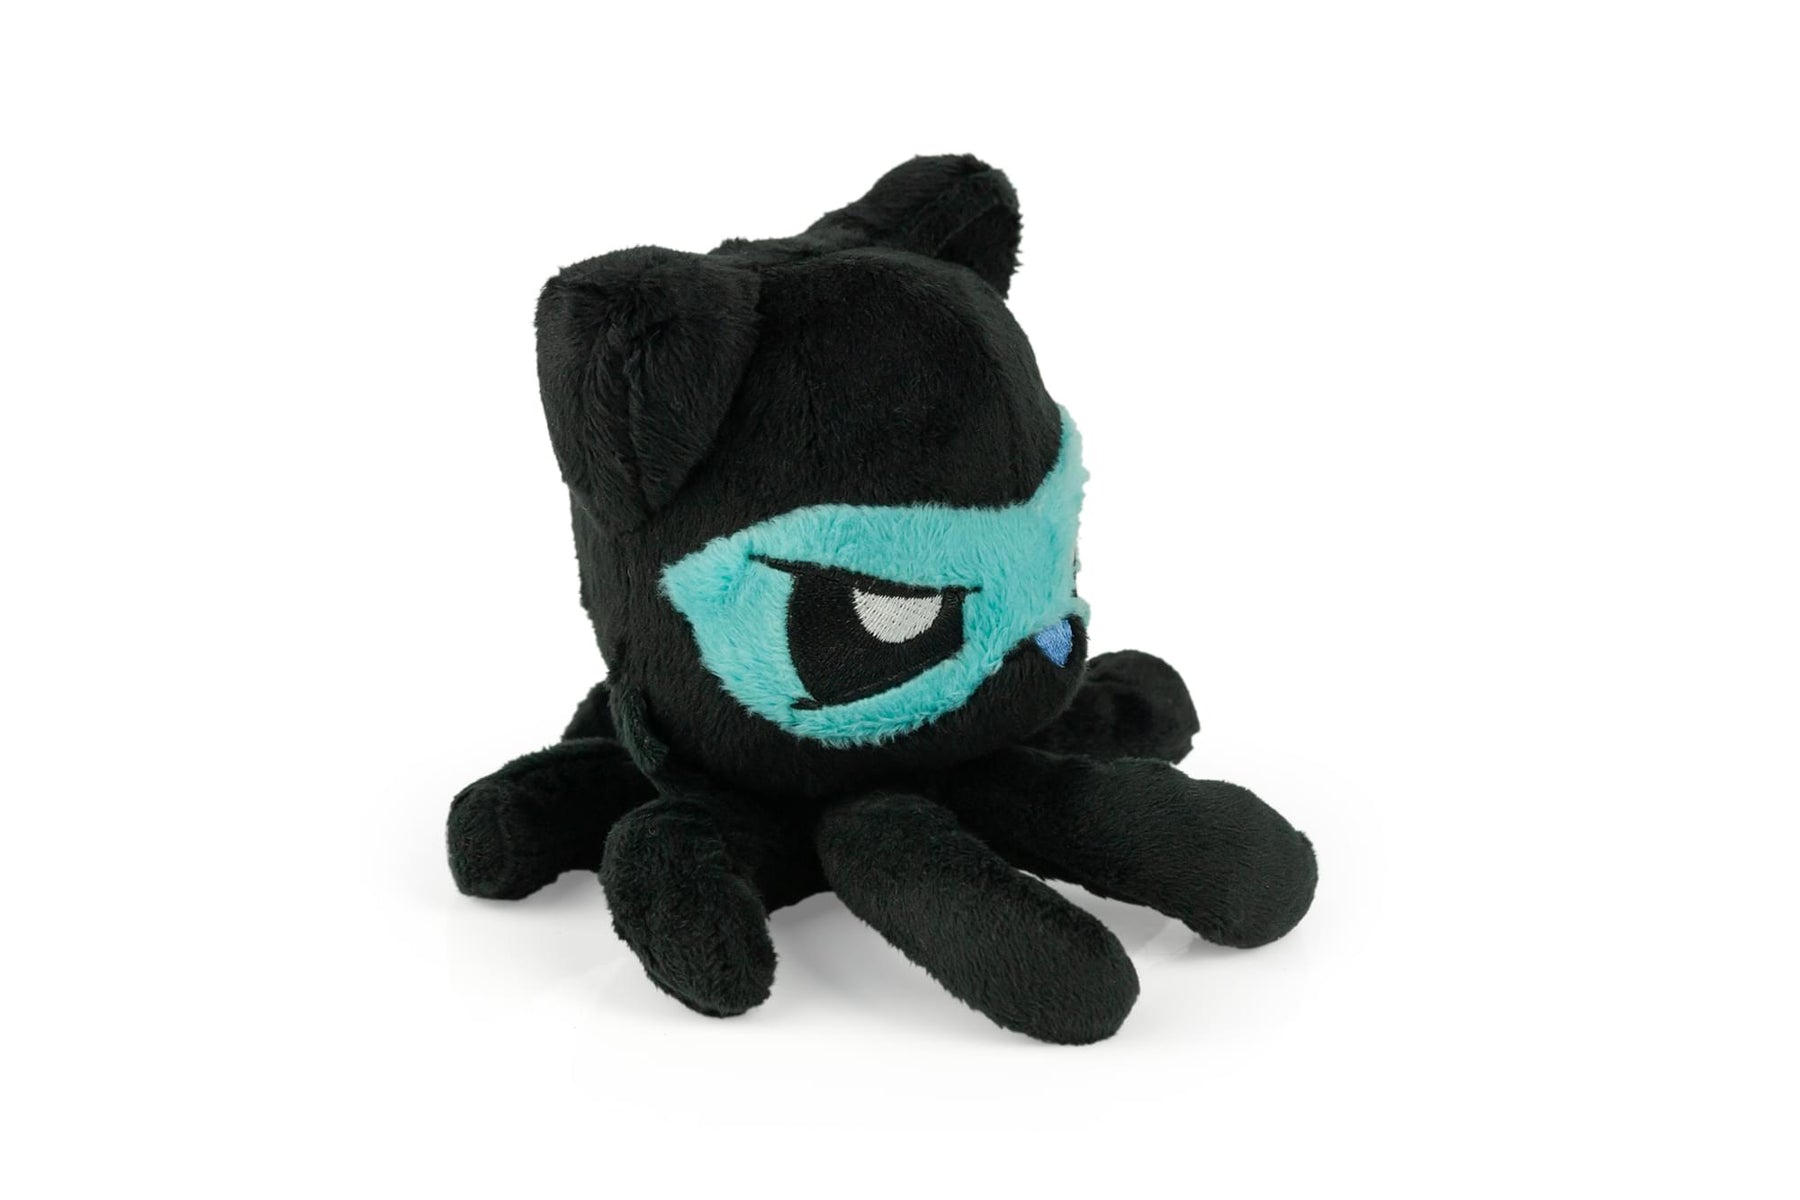 Tentacle Kitty Series Little One Plush | Ninja